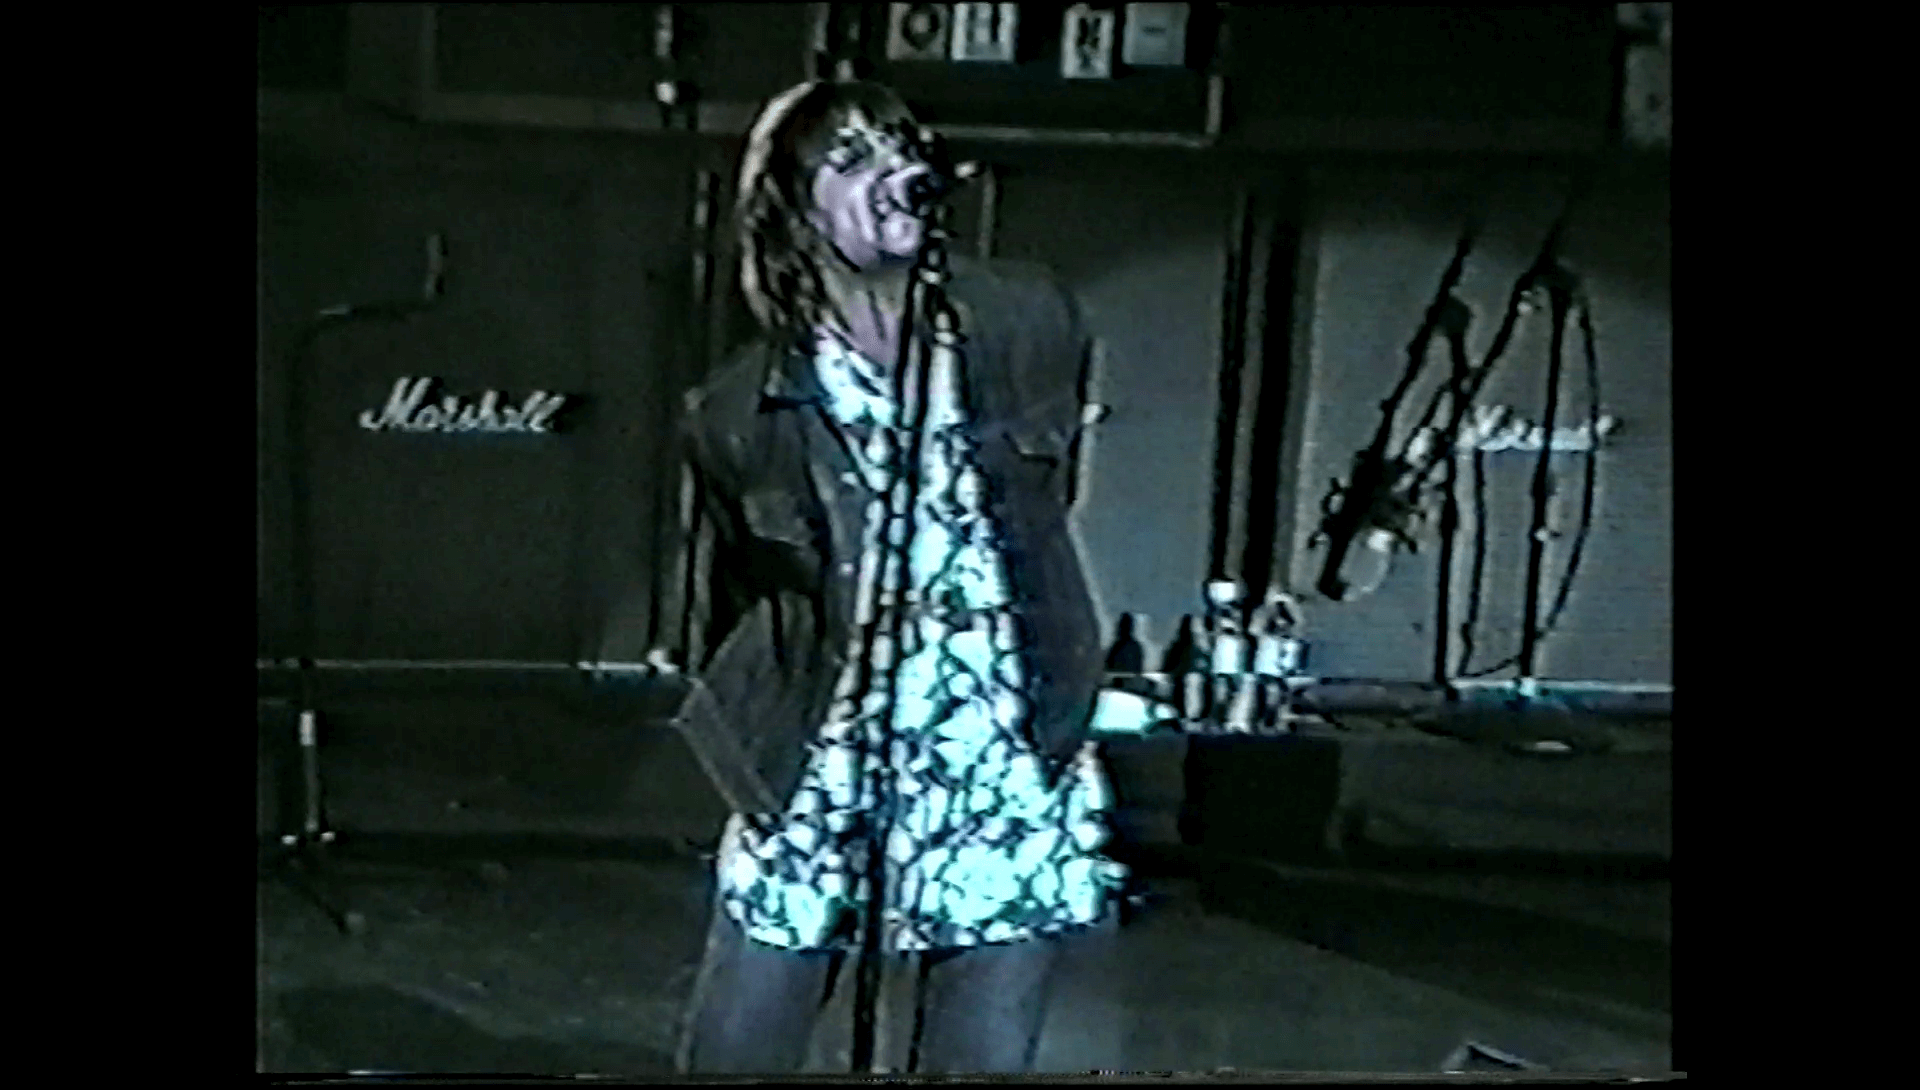 Oasis at Radio City Music Hall; New York, NY - May 1, 2000